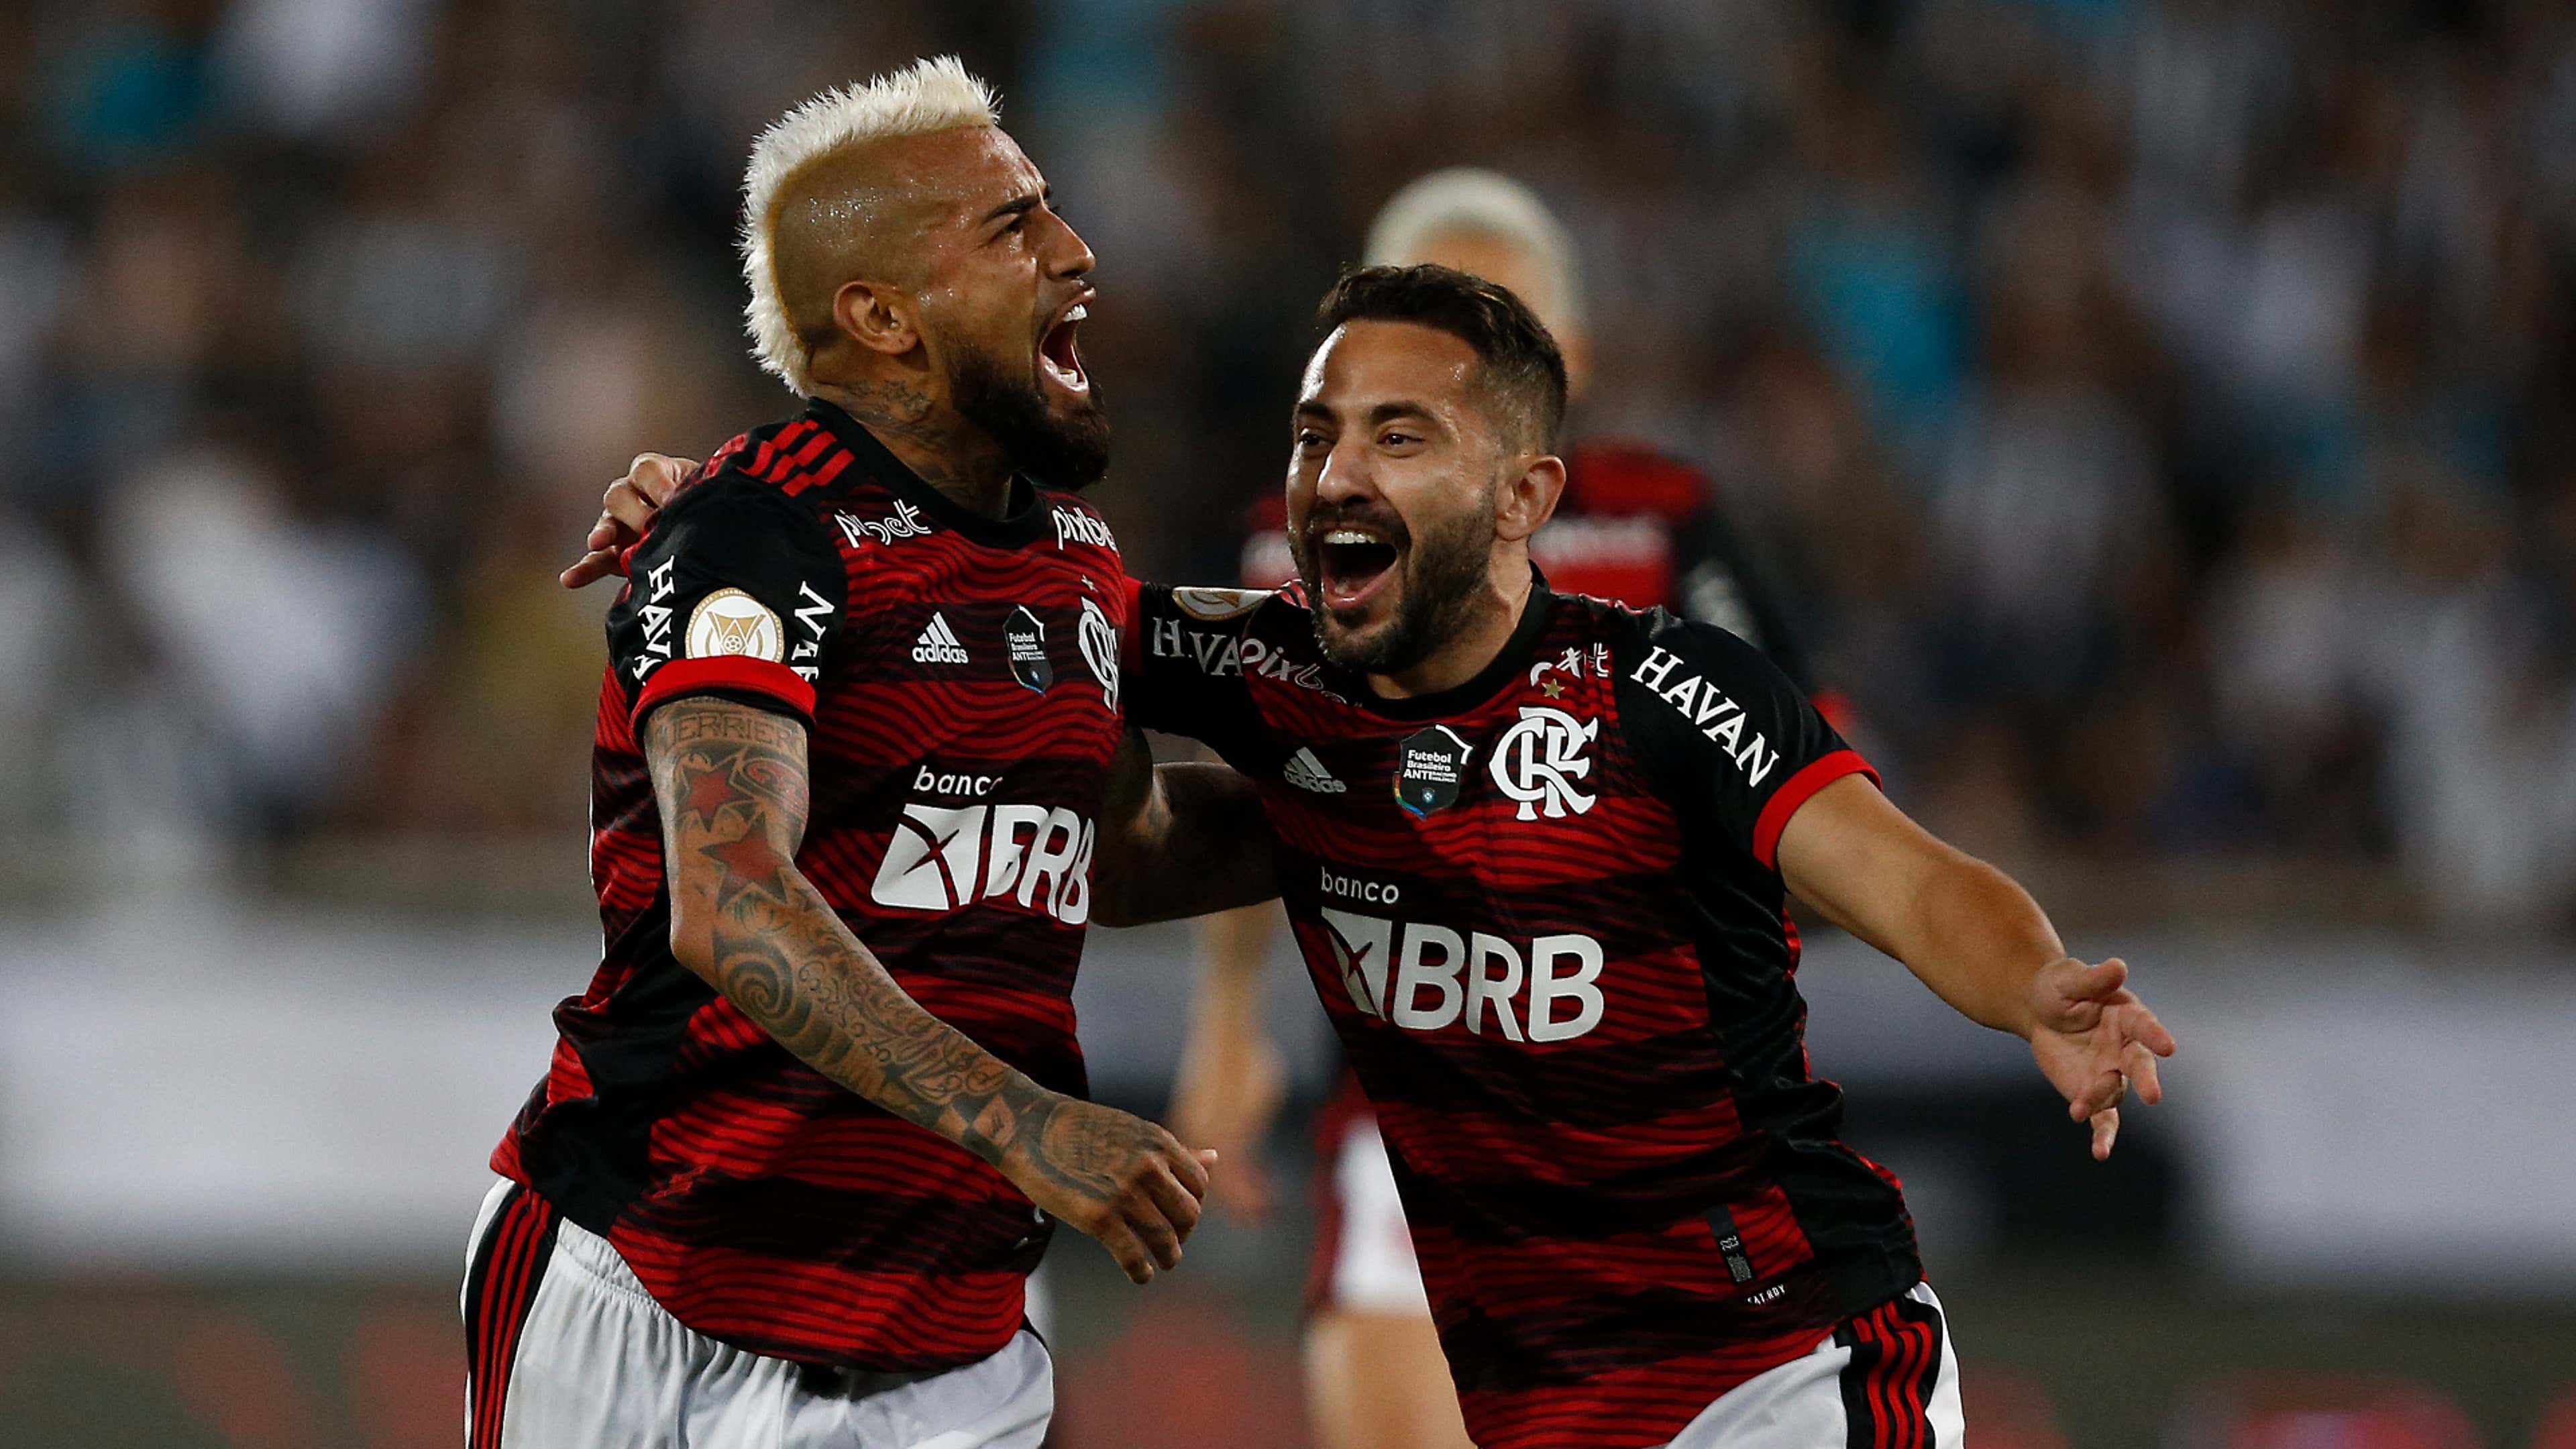 Goiás x Flamengo ao vivo: como assistir online e transmissão na TV